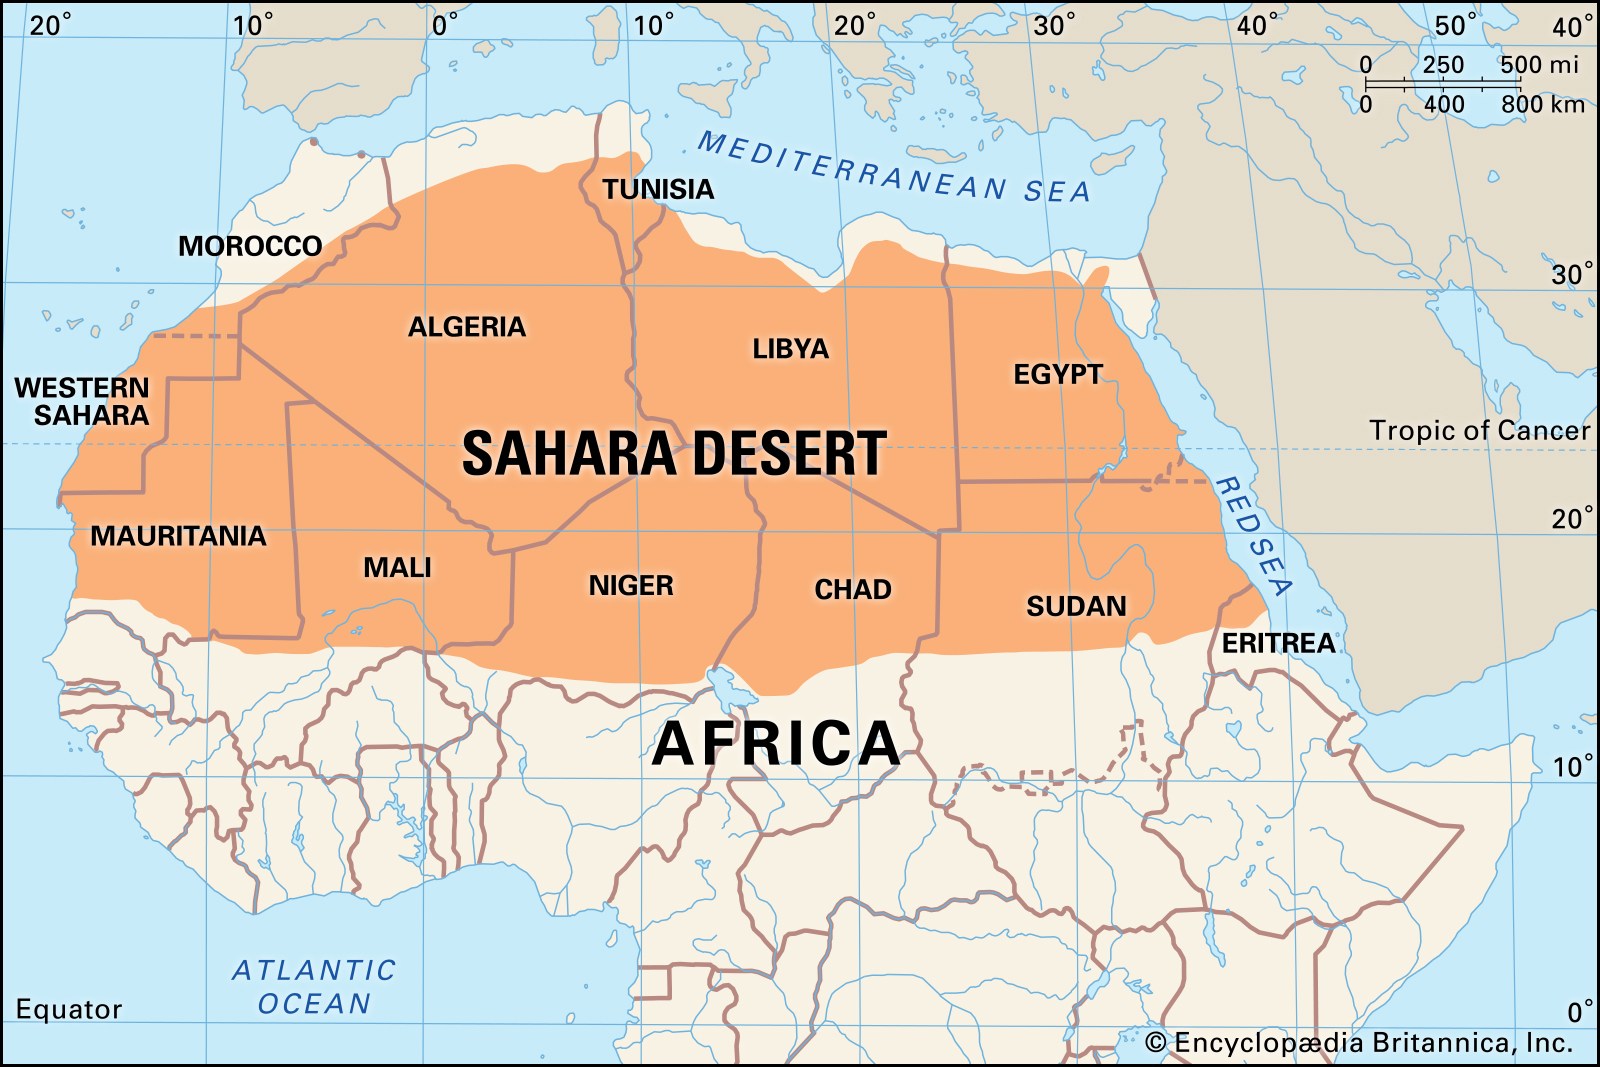 撒哈拉沙漠有多深？如果挖空沙子，下面还能剩下什么？